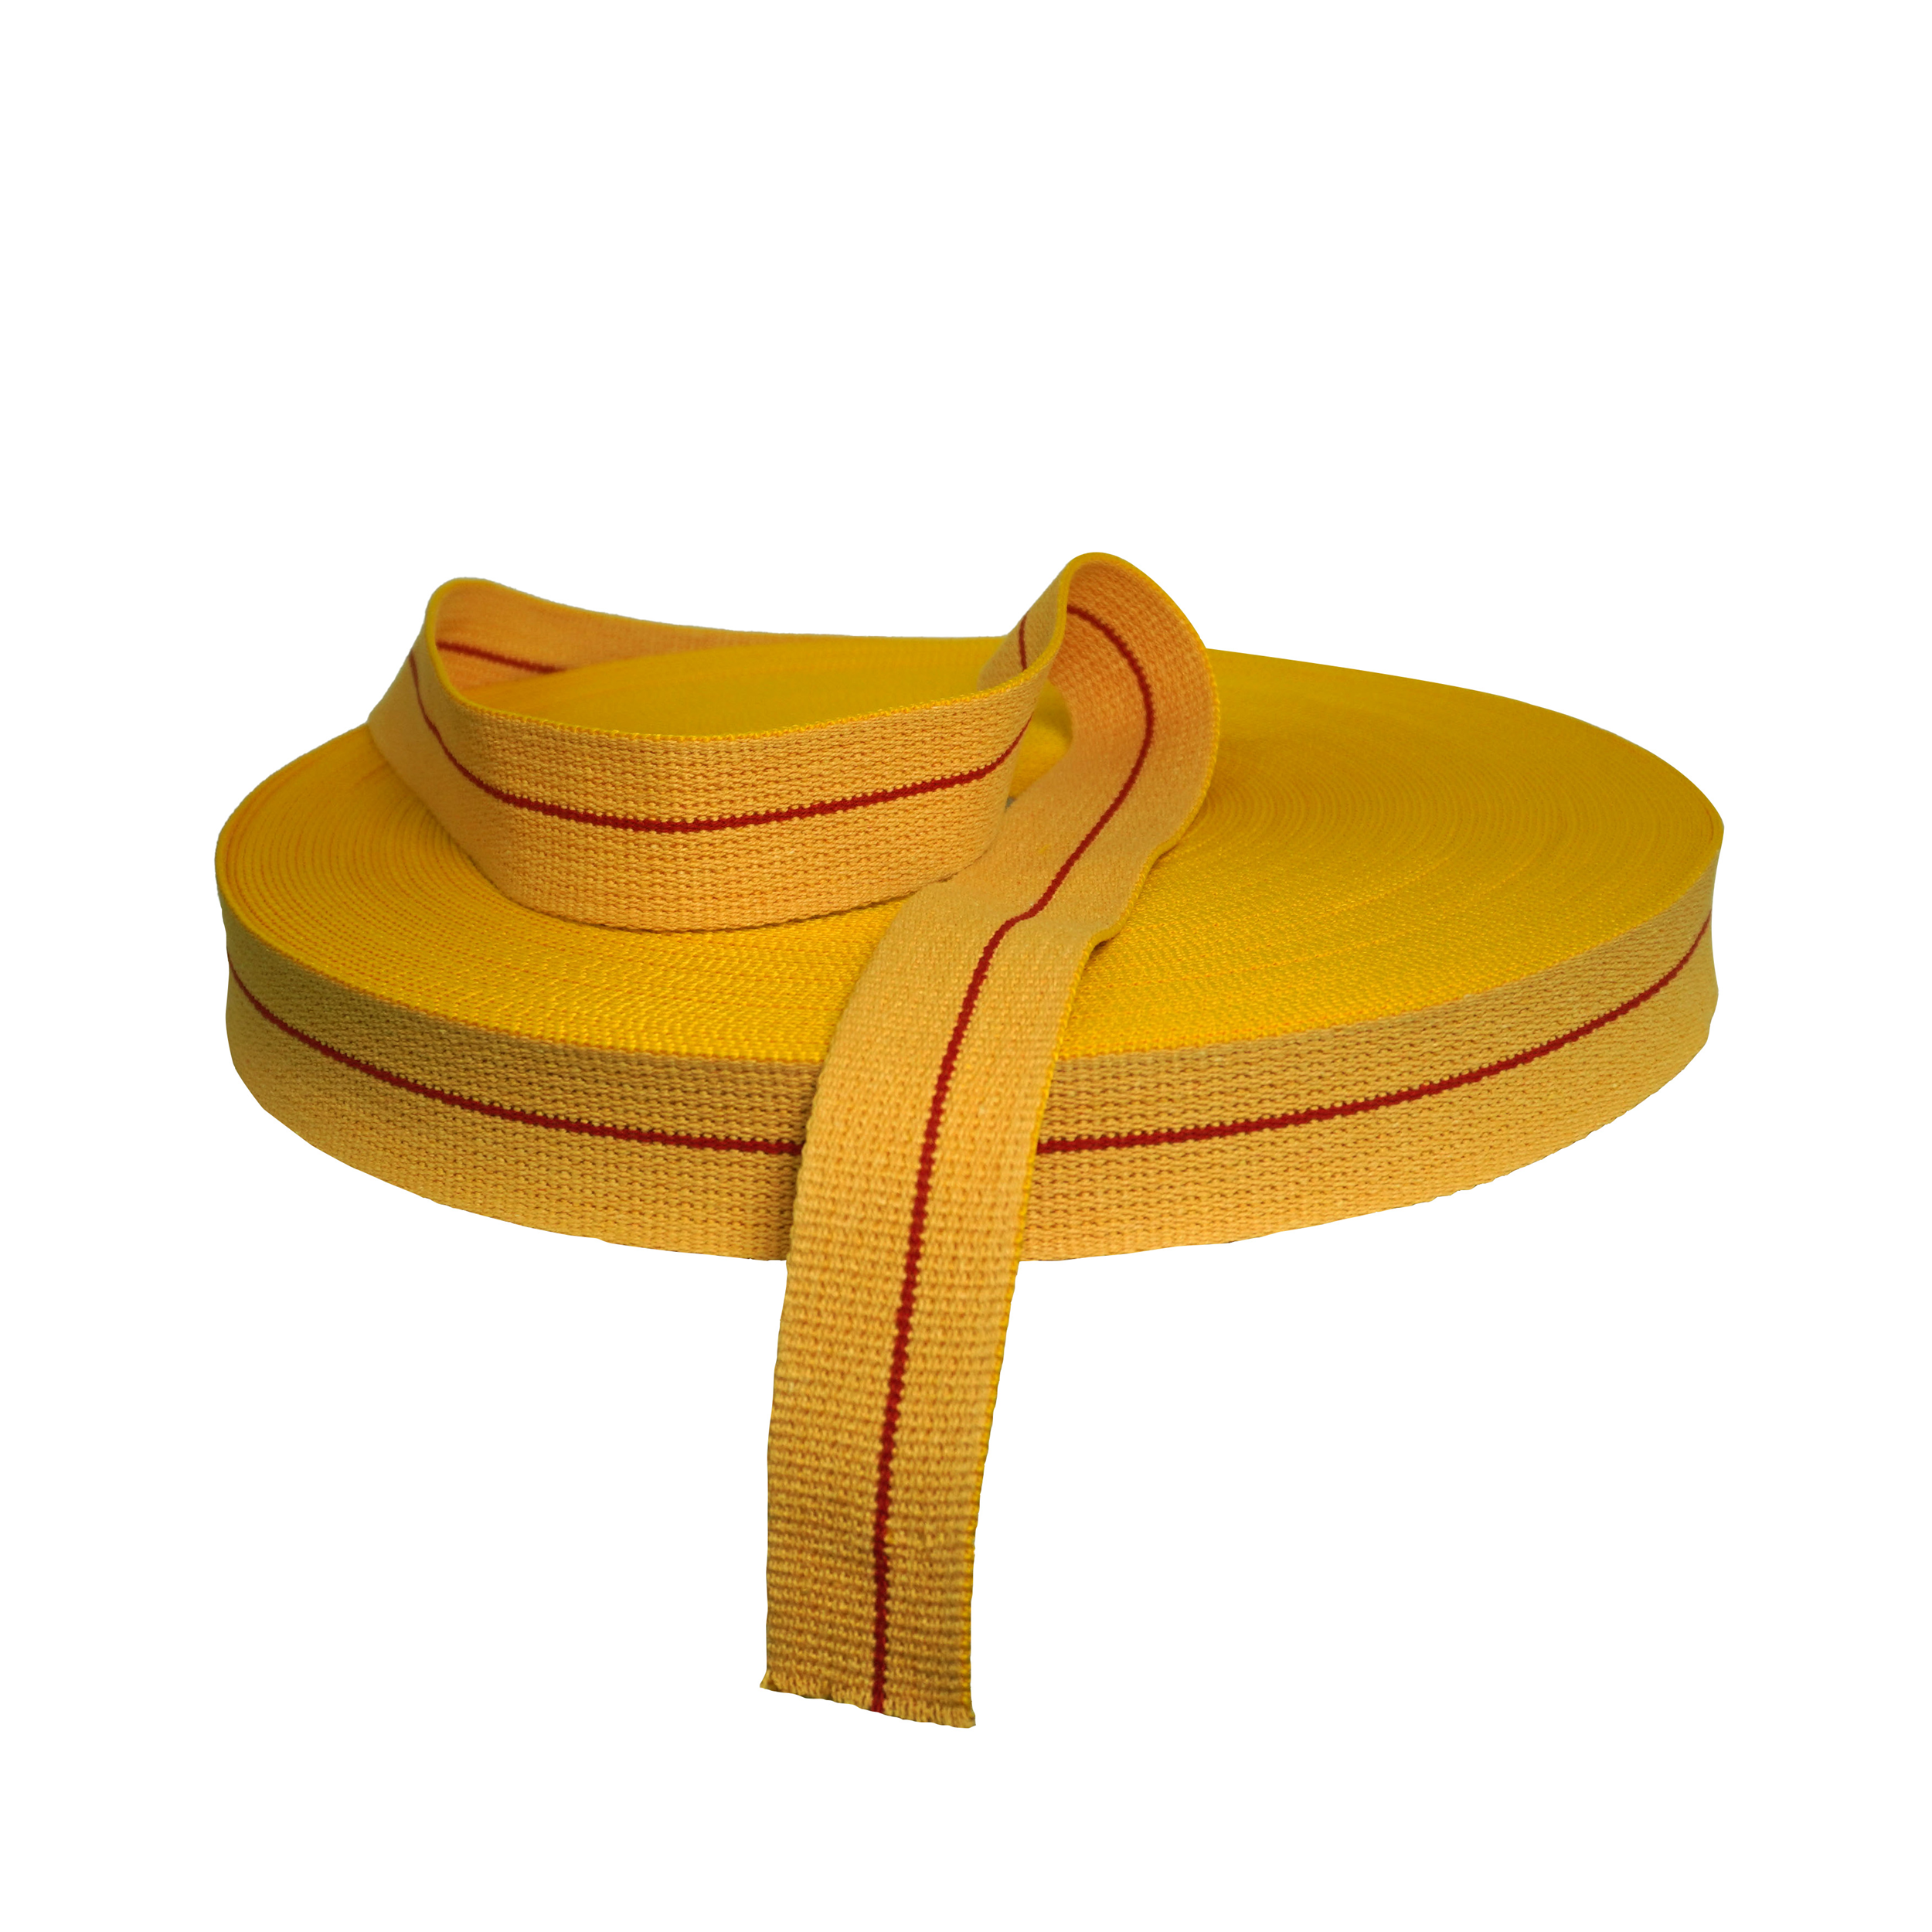 Rouleau ceinture jaune karaté 50 M pour les clubs et collectivités